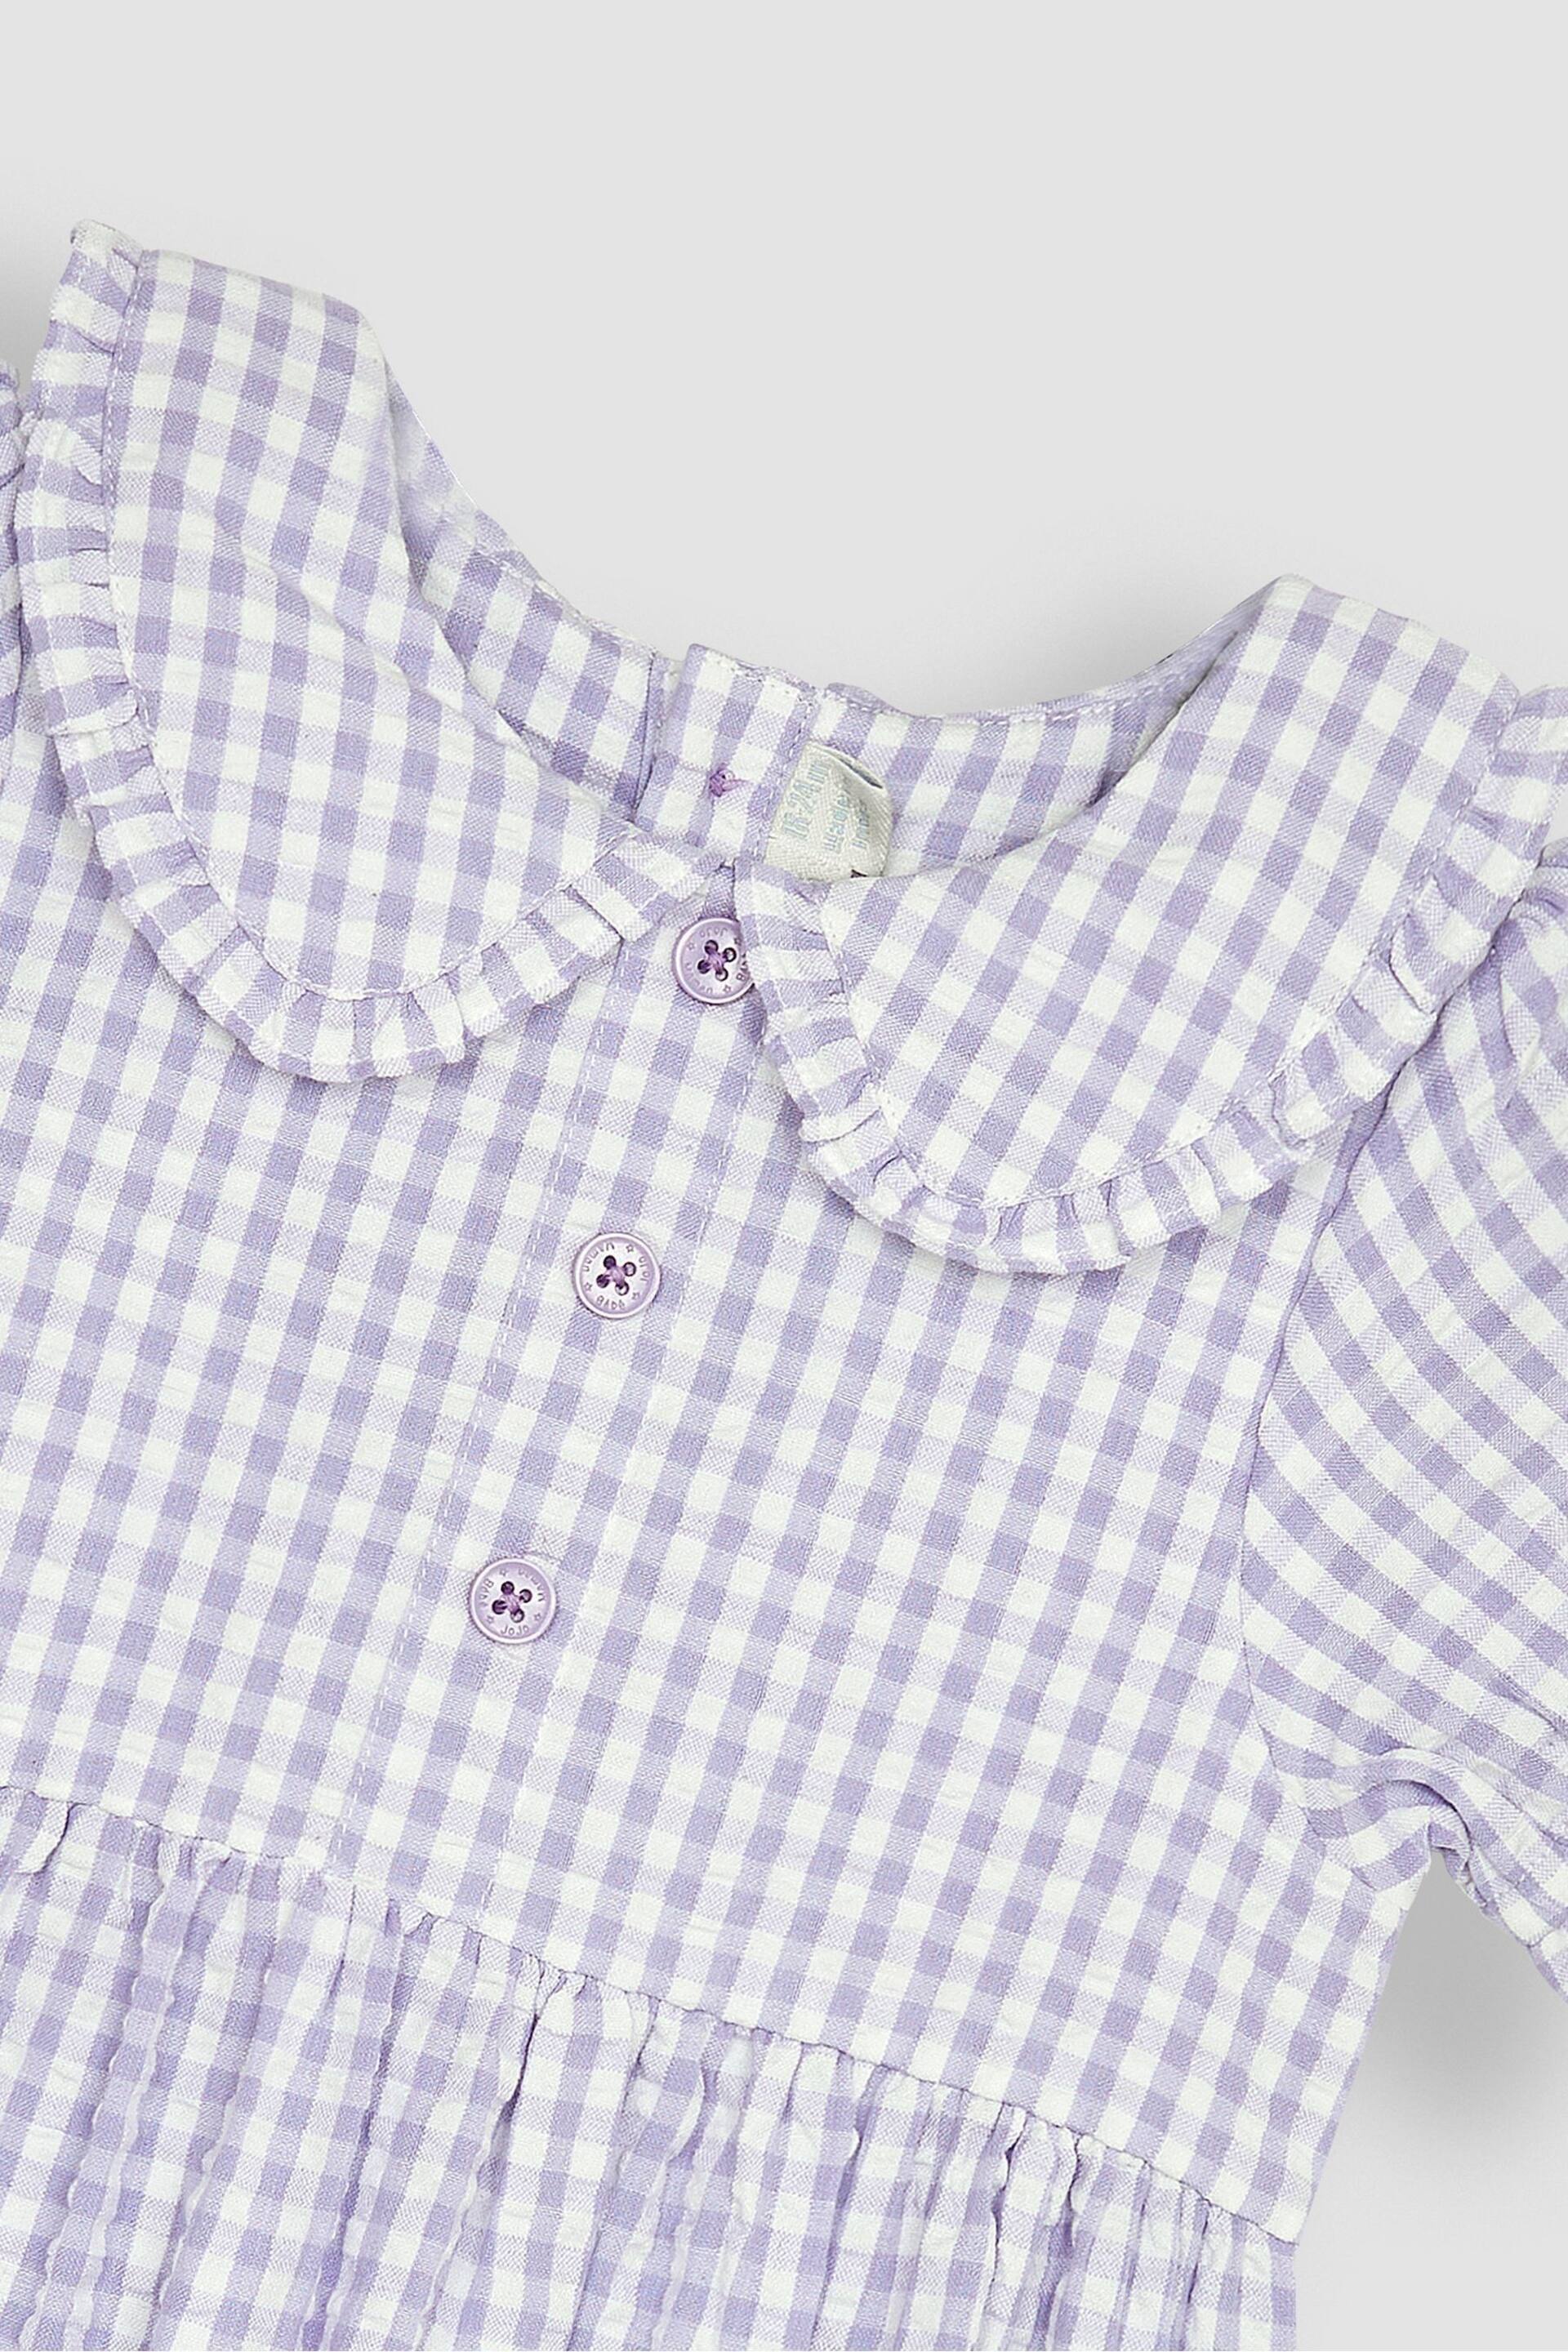 JoJo Maman Bébé Lilac Purple Gingham Button Front Collar Tea Dress - Image 2 of 3